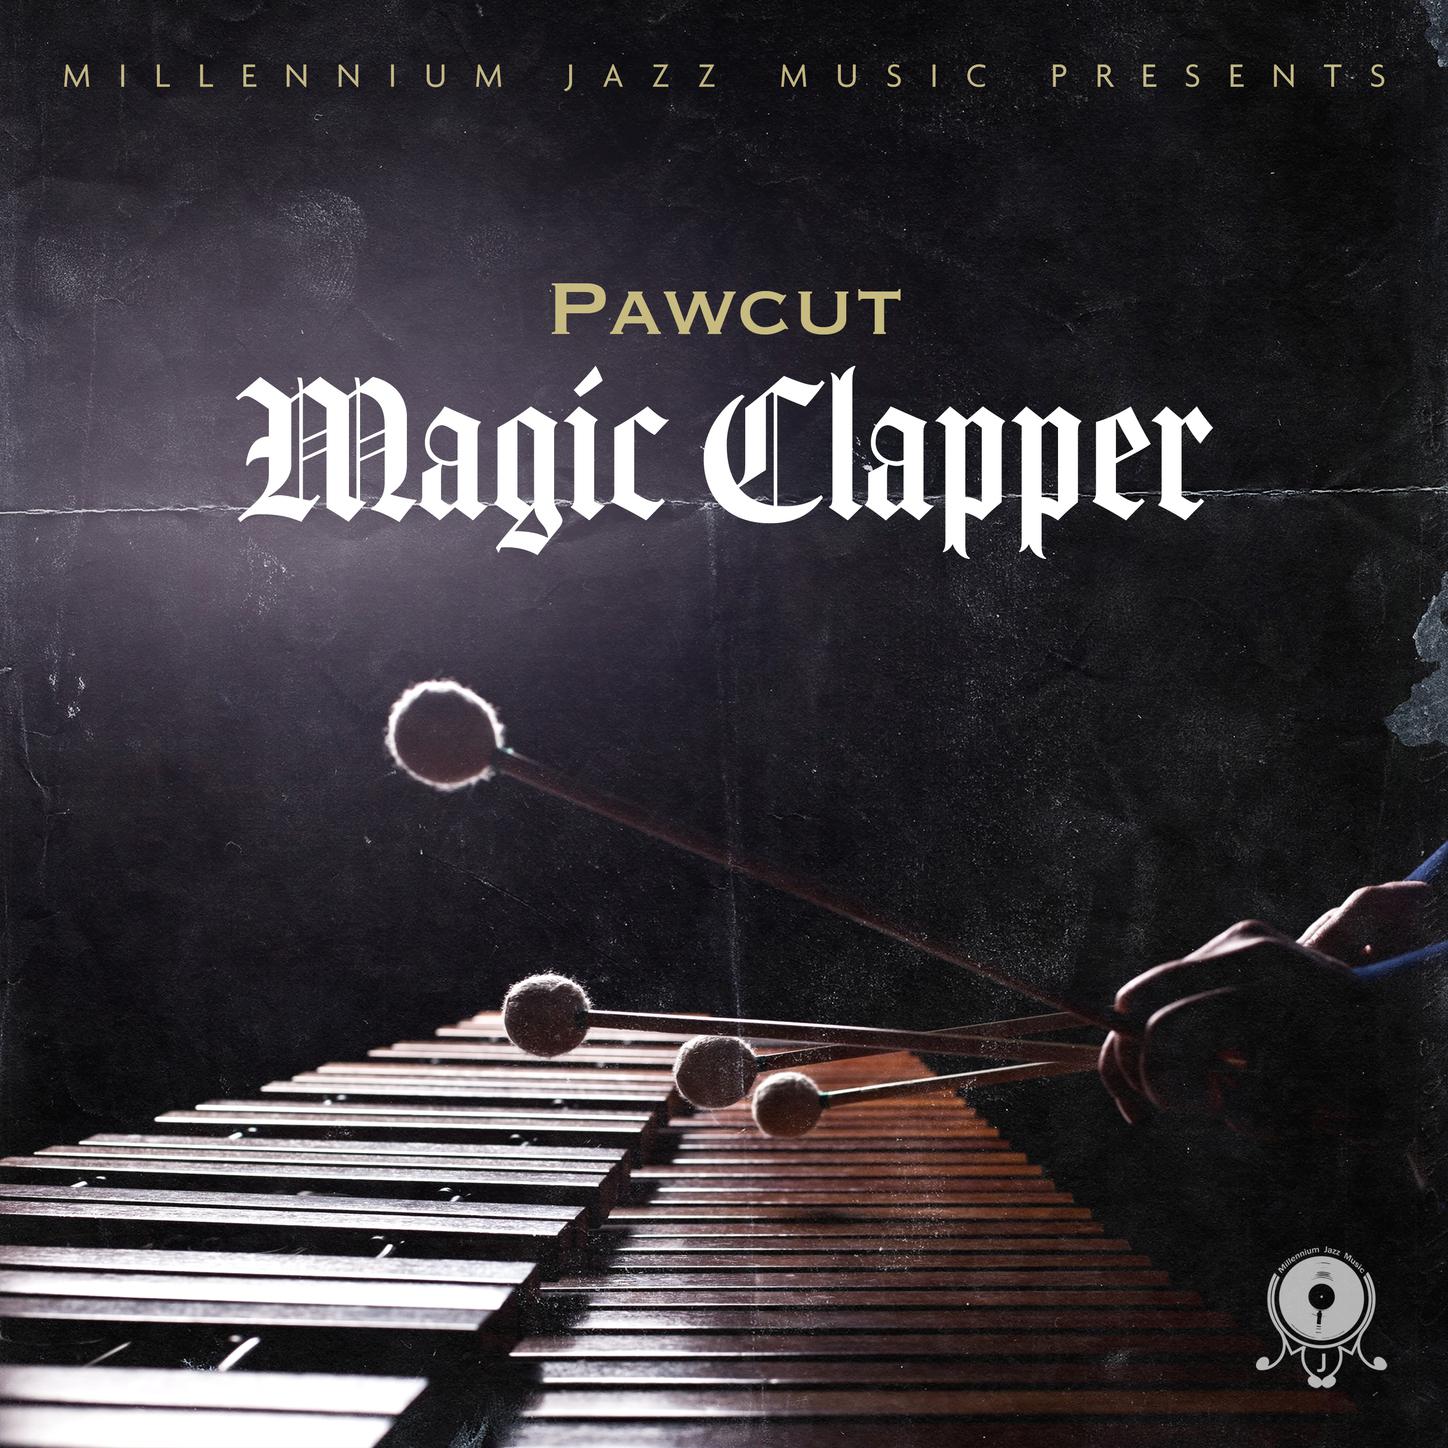 Pawcut - Magic Clapper